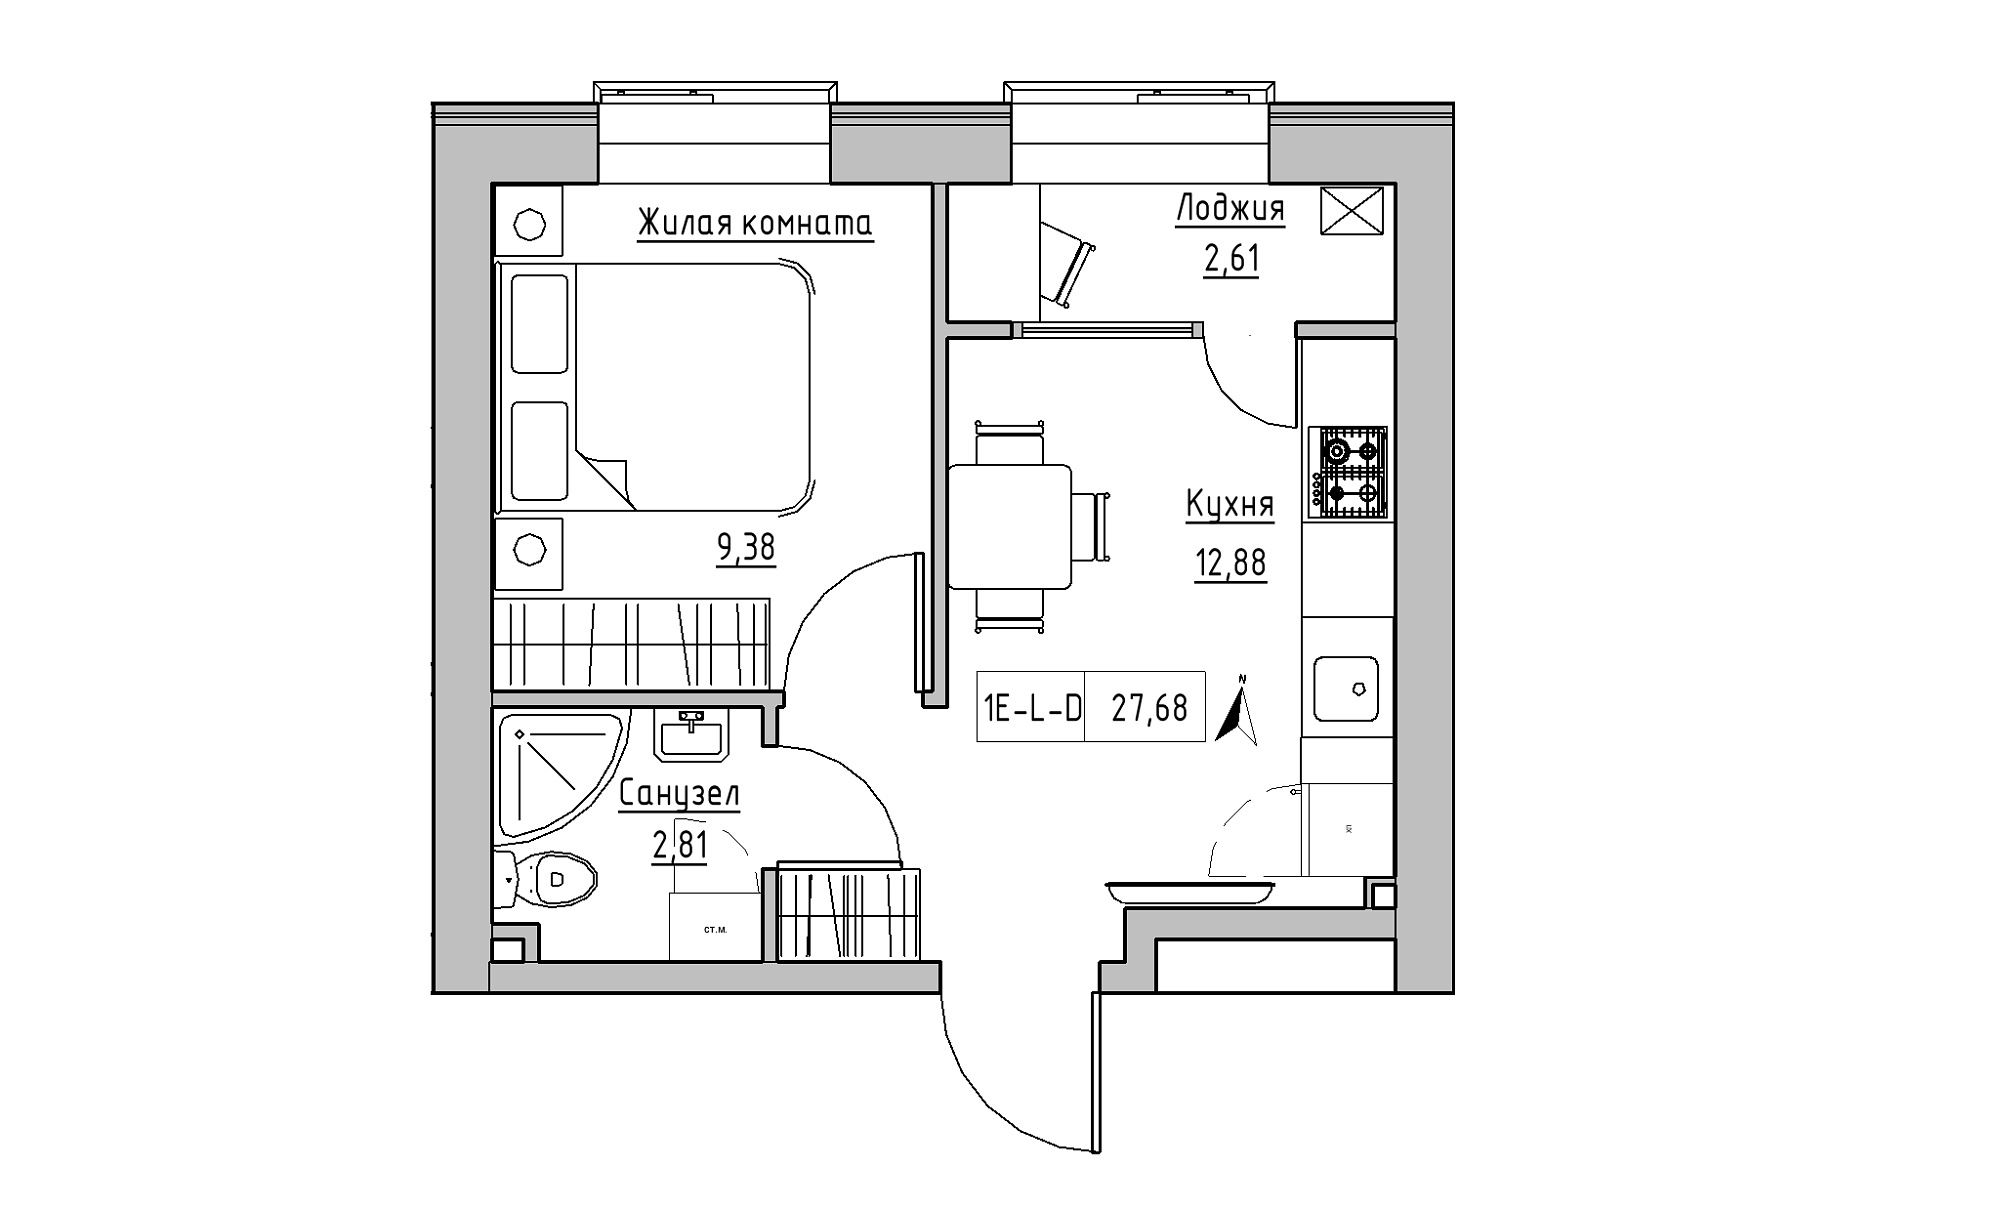 Планування 1-к квартира площею 27.68м2, KS-016-03/0001.